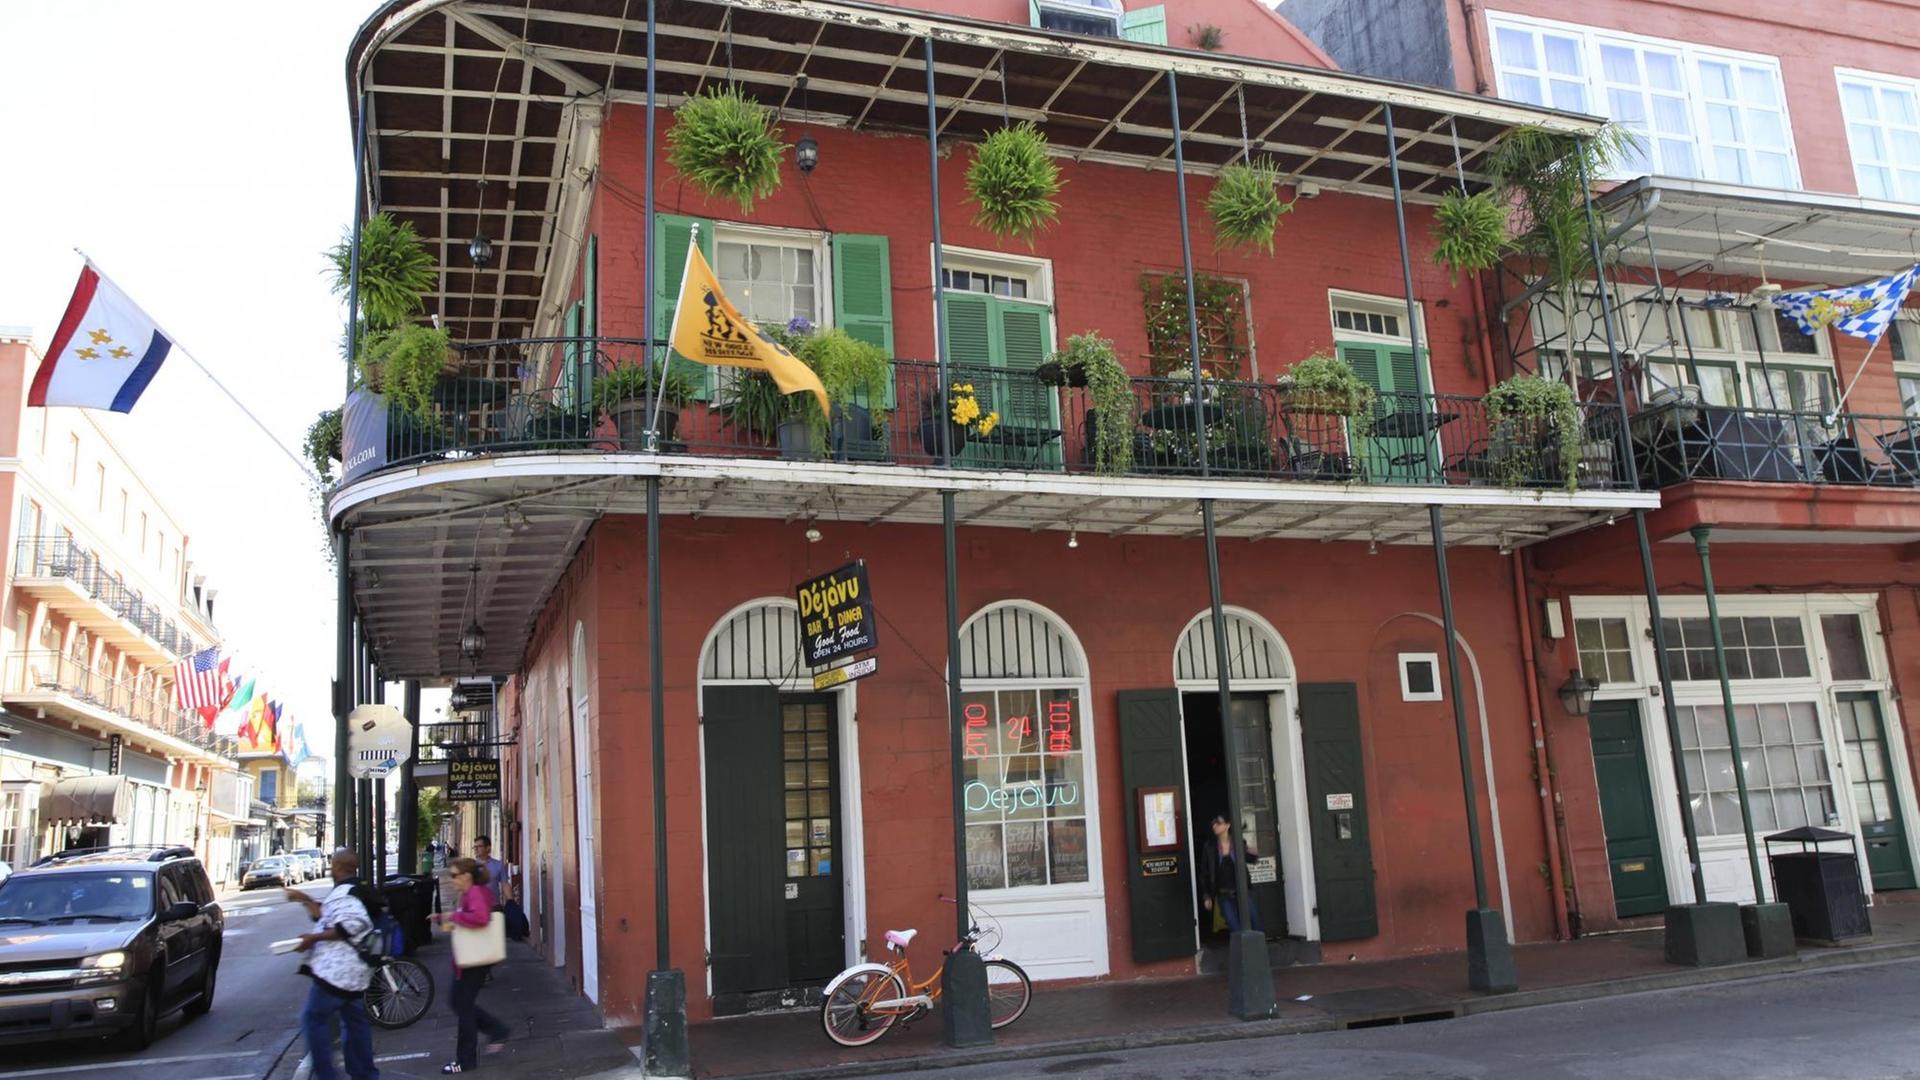 Das Gebäude wurde um 1850 an der Ecke Conti Street und Dauphine Streets gebaut. Ehemals befand sich hier das Rotlichtmillieu von New Orleans. Das Gebäude beherbergte auch schon einen Blumenladen, ein Frisörgeschäft und 1885 befand sich hier eine Opiumhöhle, die von chinesischen Brüdern geleitet wurde. Heute befindet sich dort ein Restaurant mit Bar, das den Namen "Déjà vu" besitzt.